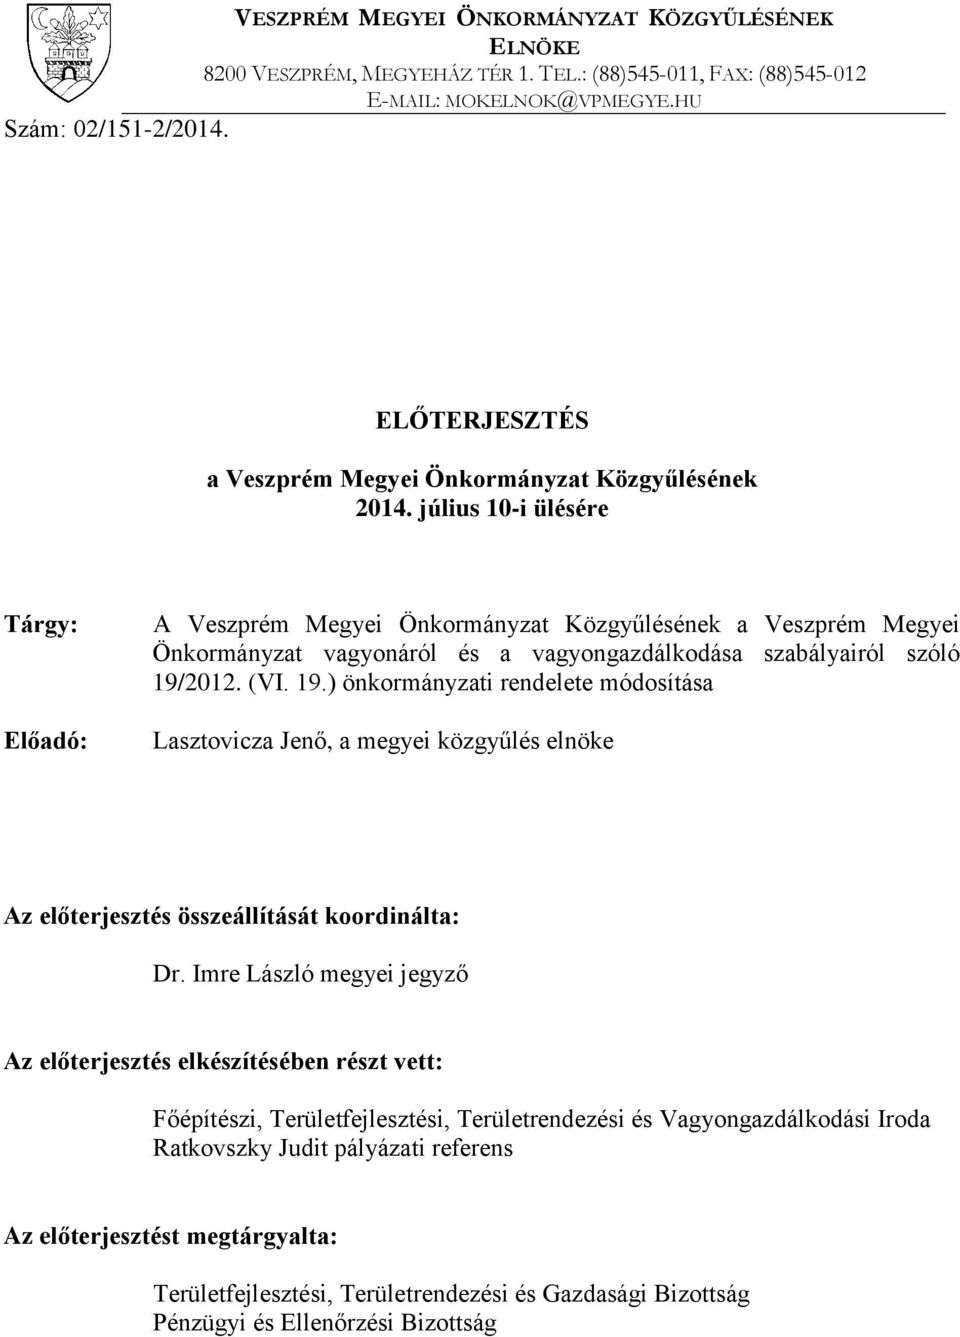 július 10-i ülésére Tárgy: Előadó: A Veszprém Megyei Önkormányzat Közgyűlésének a Veszprém Megyei Önkormányzat vagyonáról és a vagyongazdálkodása szabályairól szóló 19/